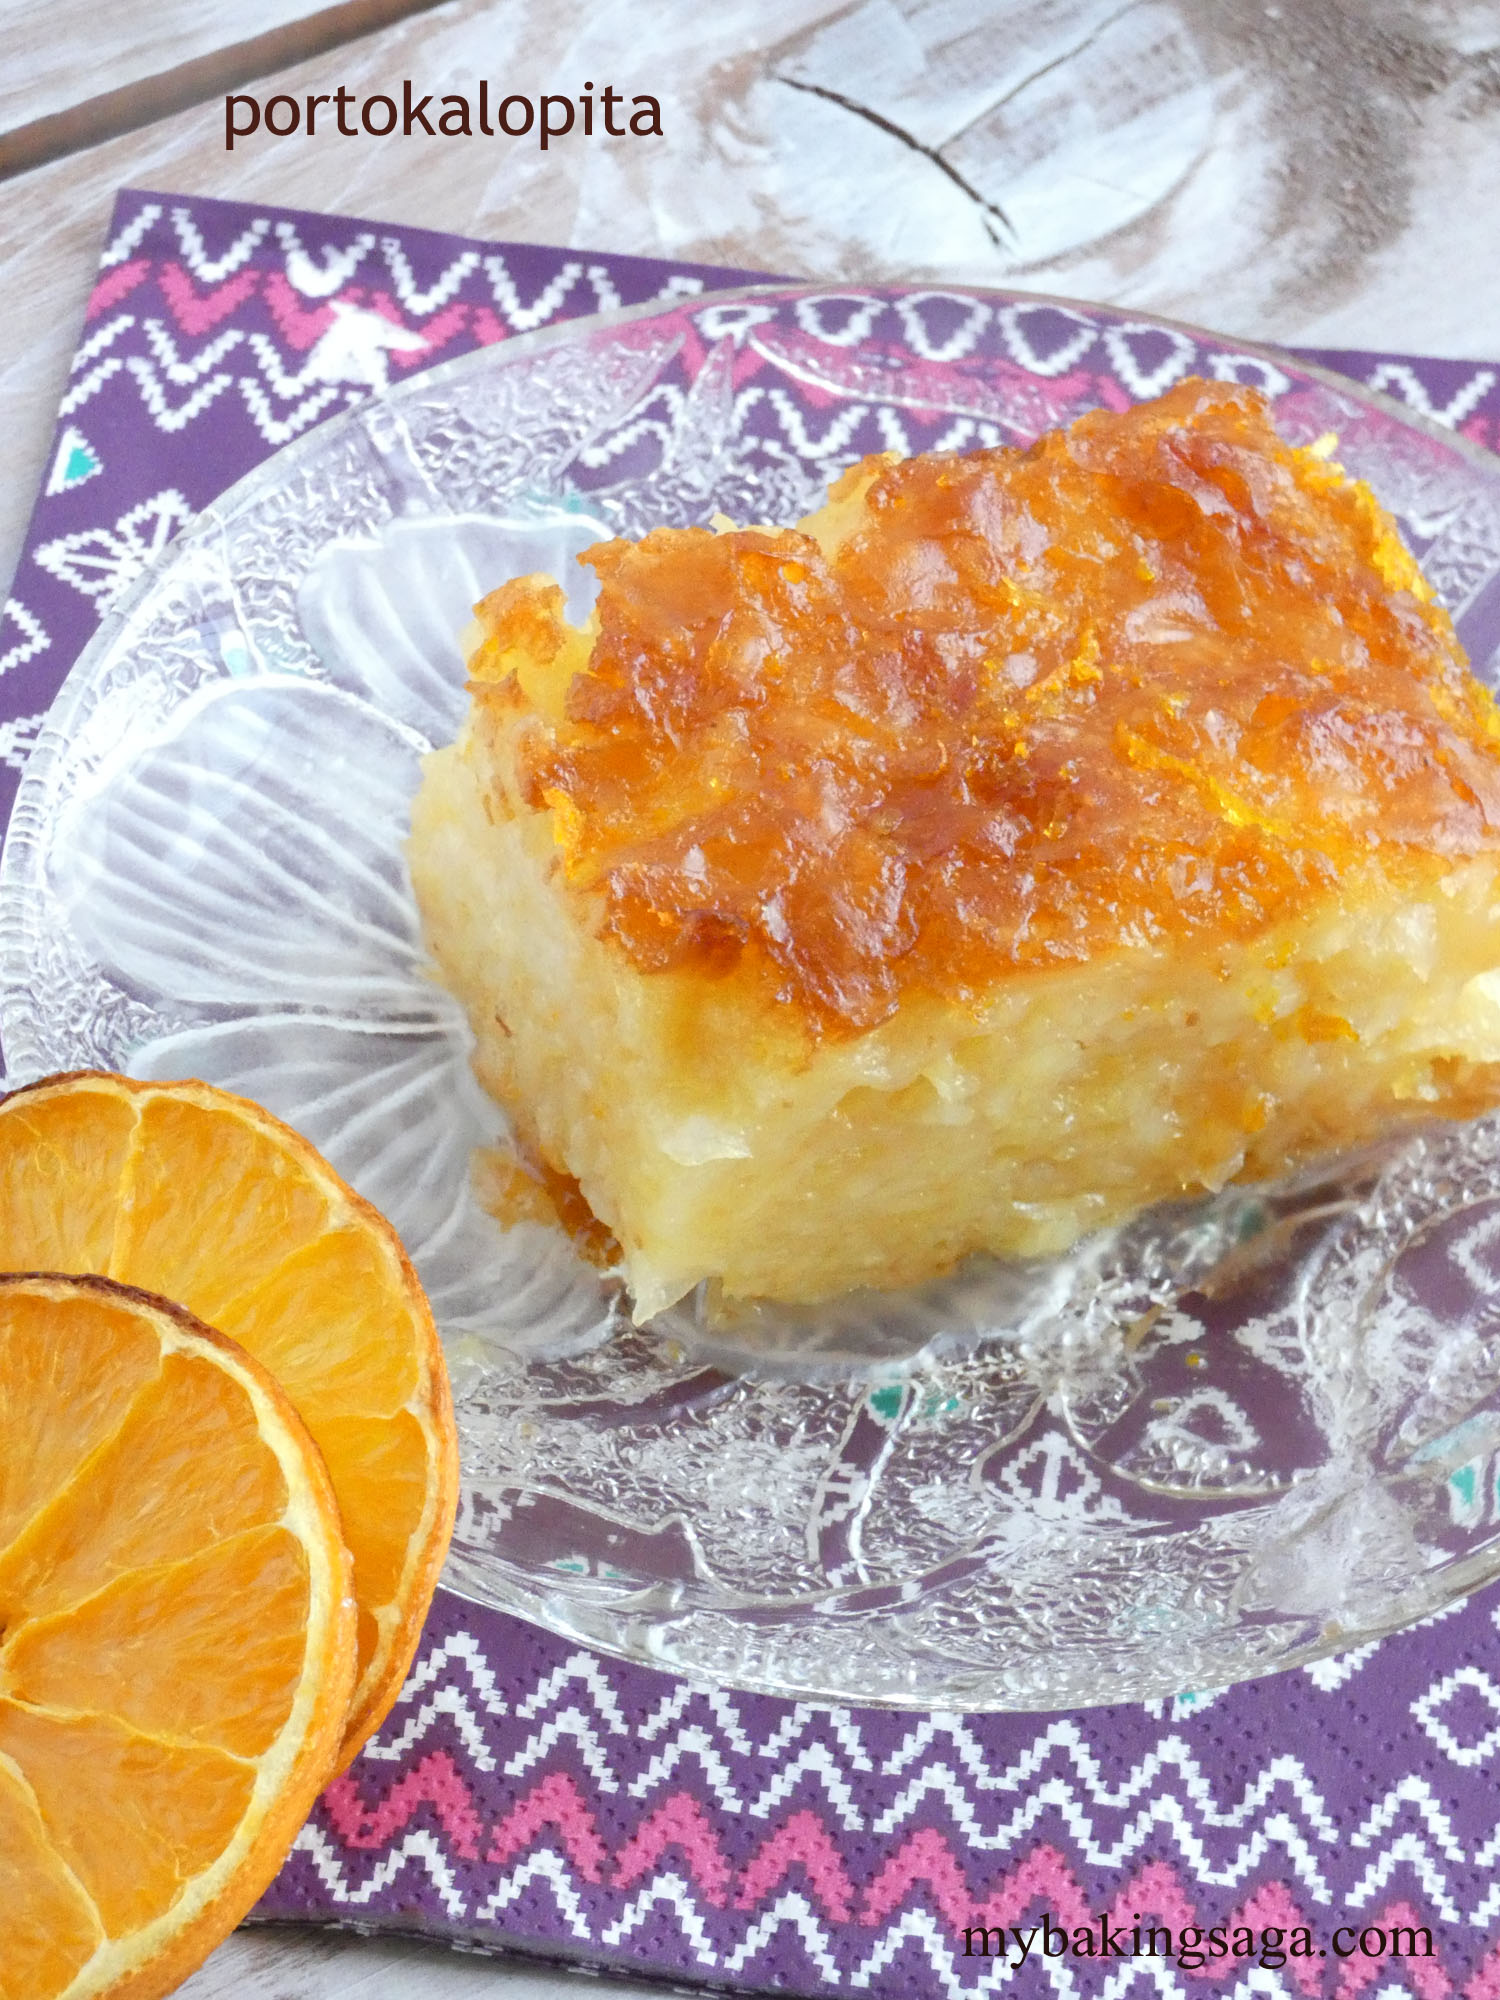 Portokalopita-Greek orange cake with syrup | my baking saga